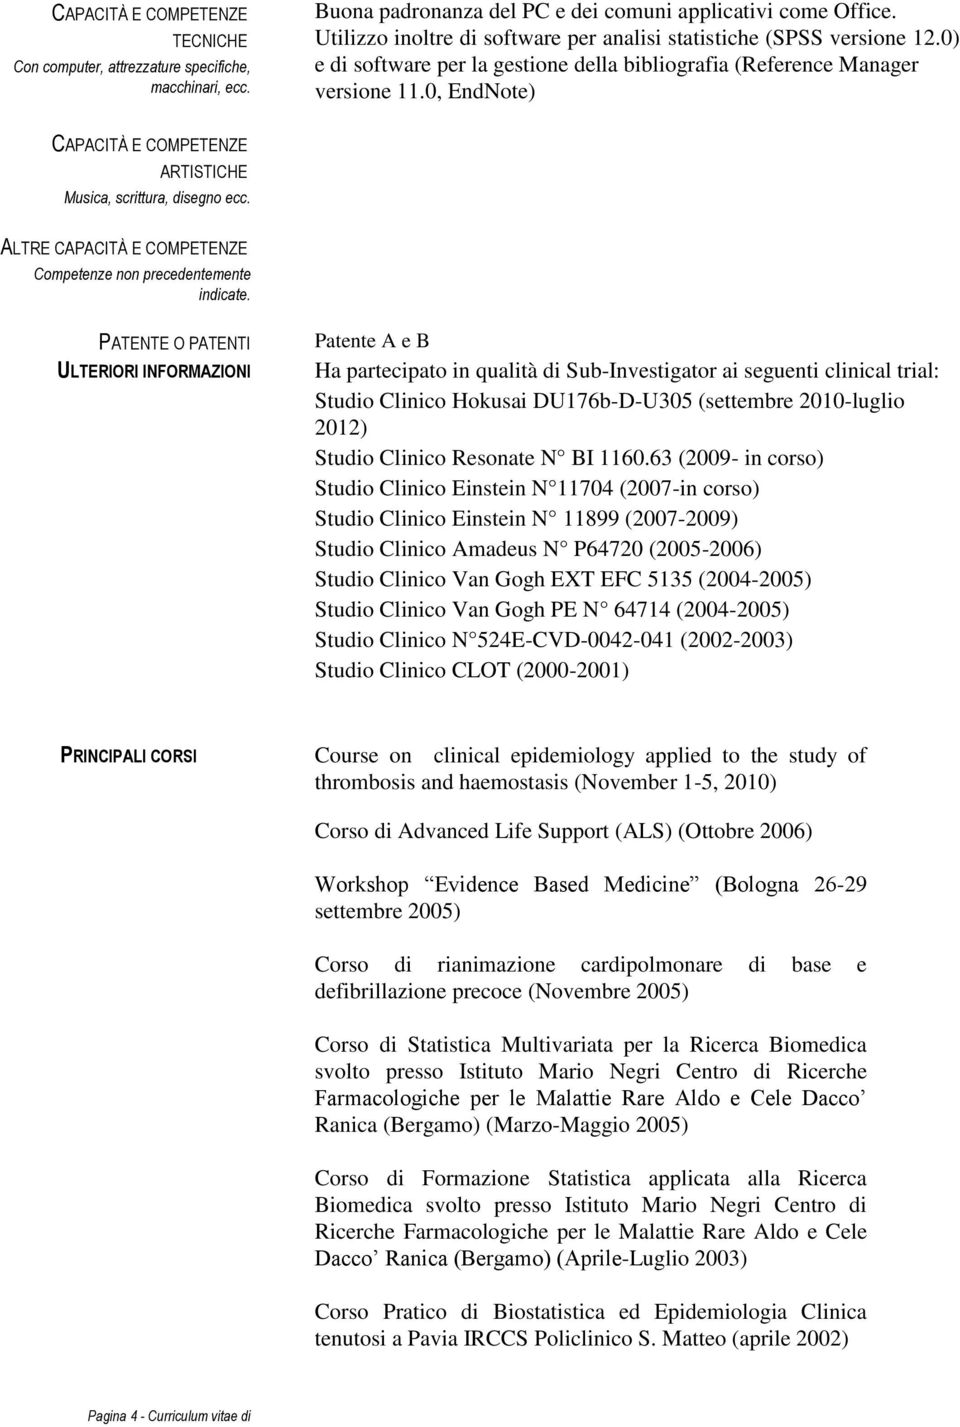 PATENTE O PATENTI ULTERIORI INFORMAZIONI Patente A e B Ha partecipato in qualità di Sub-Investigator ai seguenti clinical trial: Studio Clinico Hokusai DU176b-D-U305 (settembre 2010-luglio 2012)